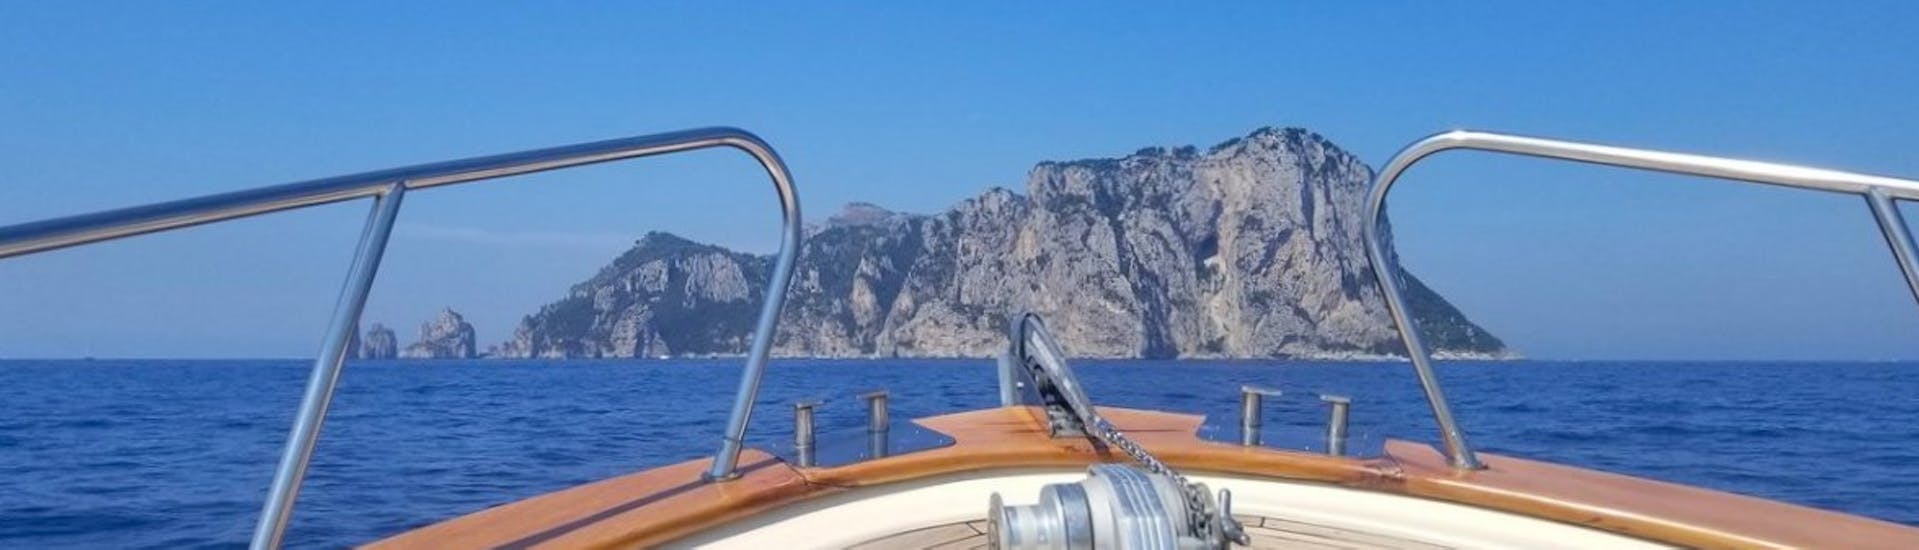 Gita in barca privata con soste a Positano e Amalfi.